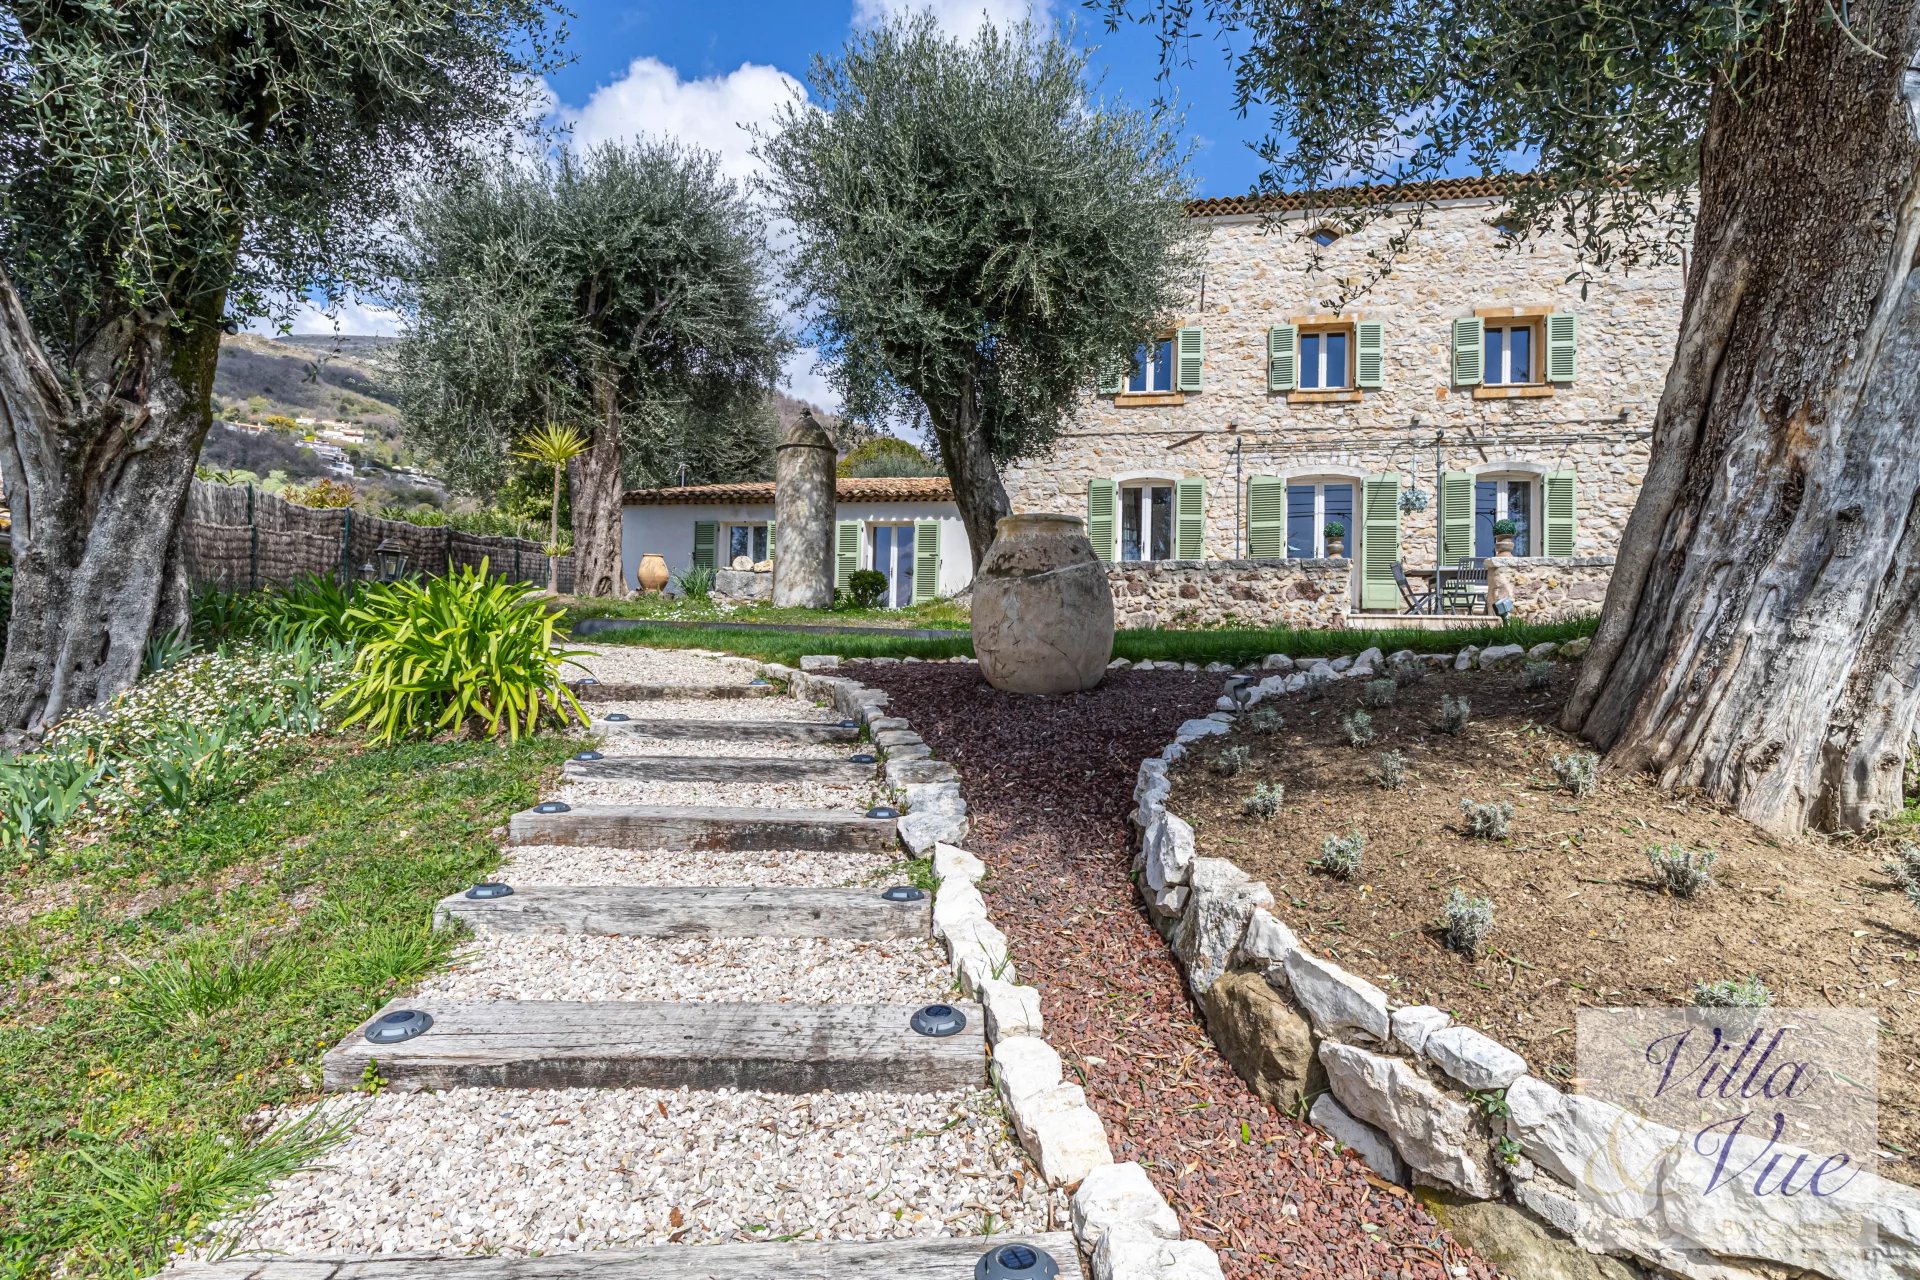 Sur la Cote d Azur, Bastide provençale entièrement rénovée, calme, piscine, jardin arboré, possibilité maison d'hôtes